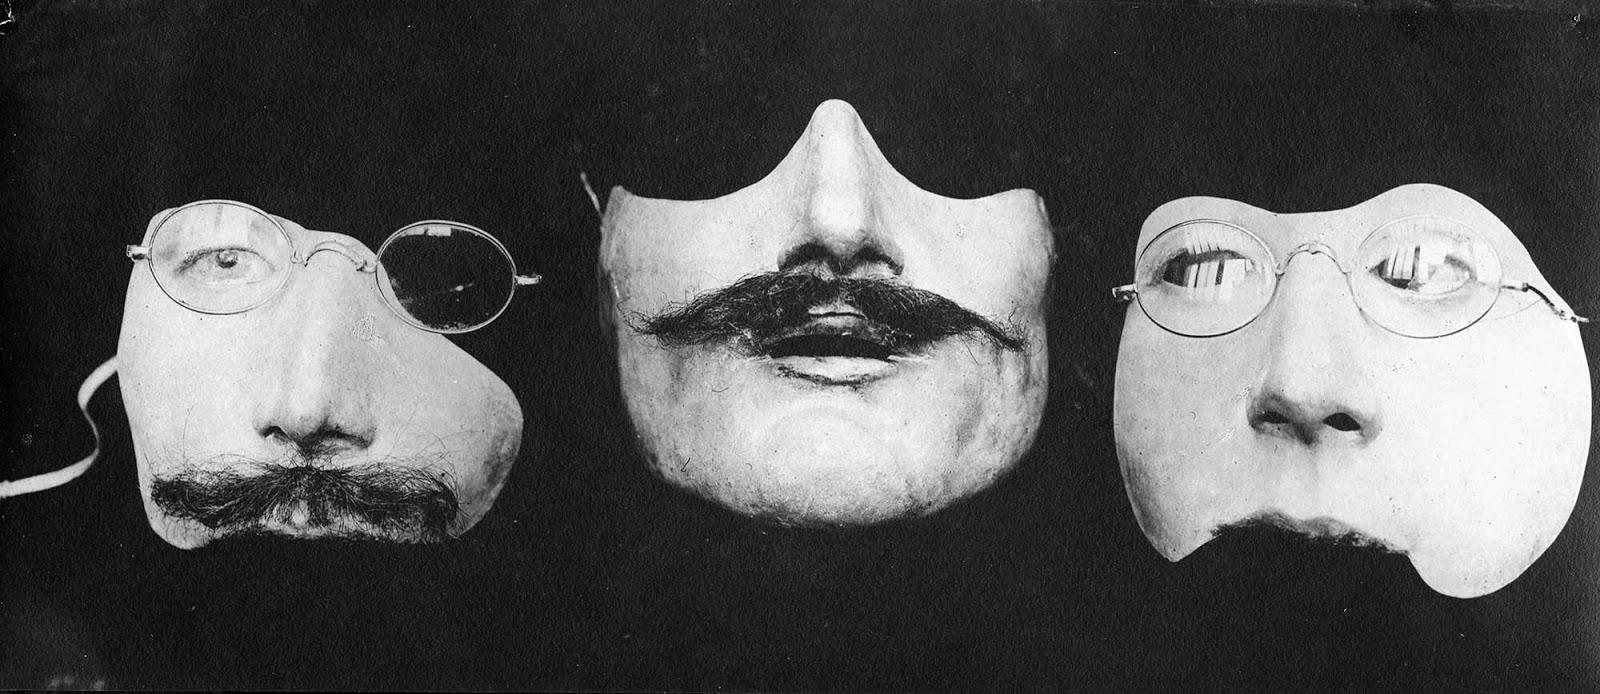 Anna Coleman Ladd faire des masques portés par les soldats français avec des visages mutilés, 1918